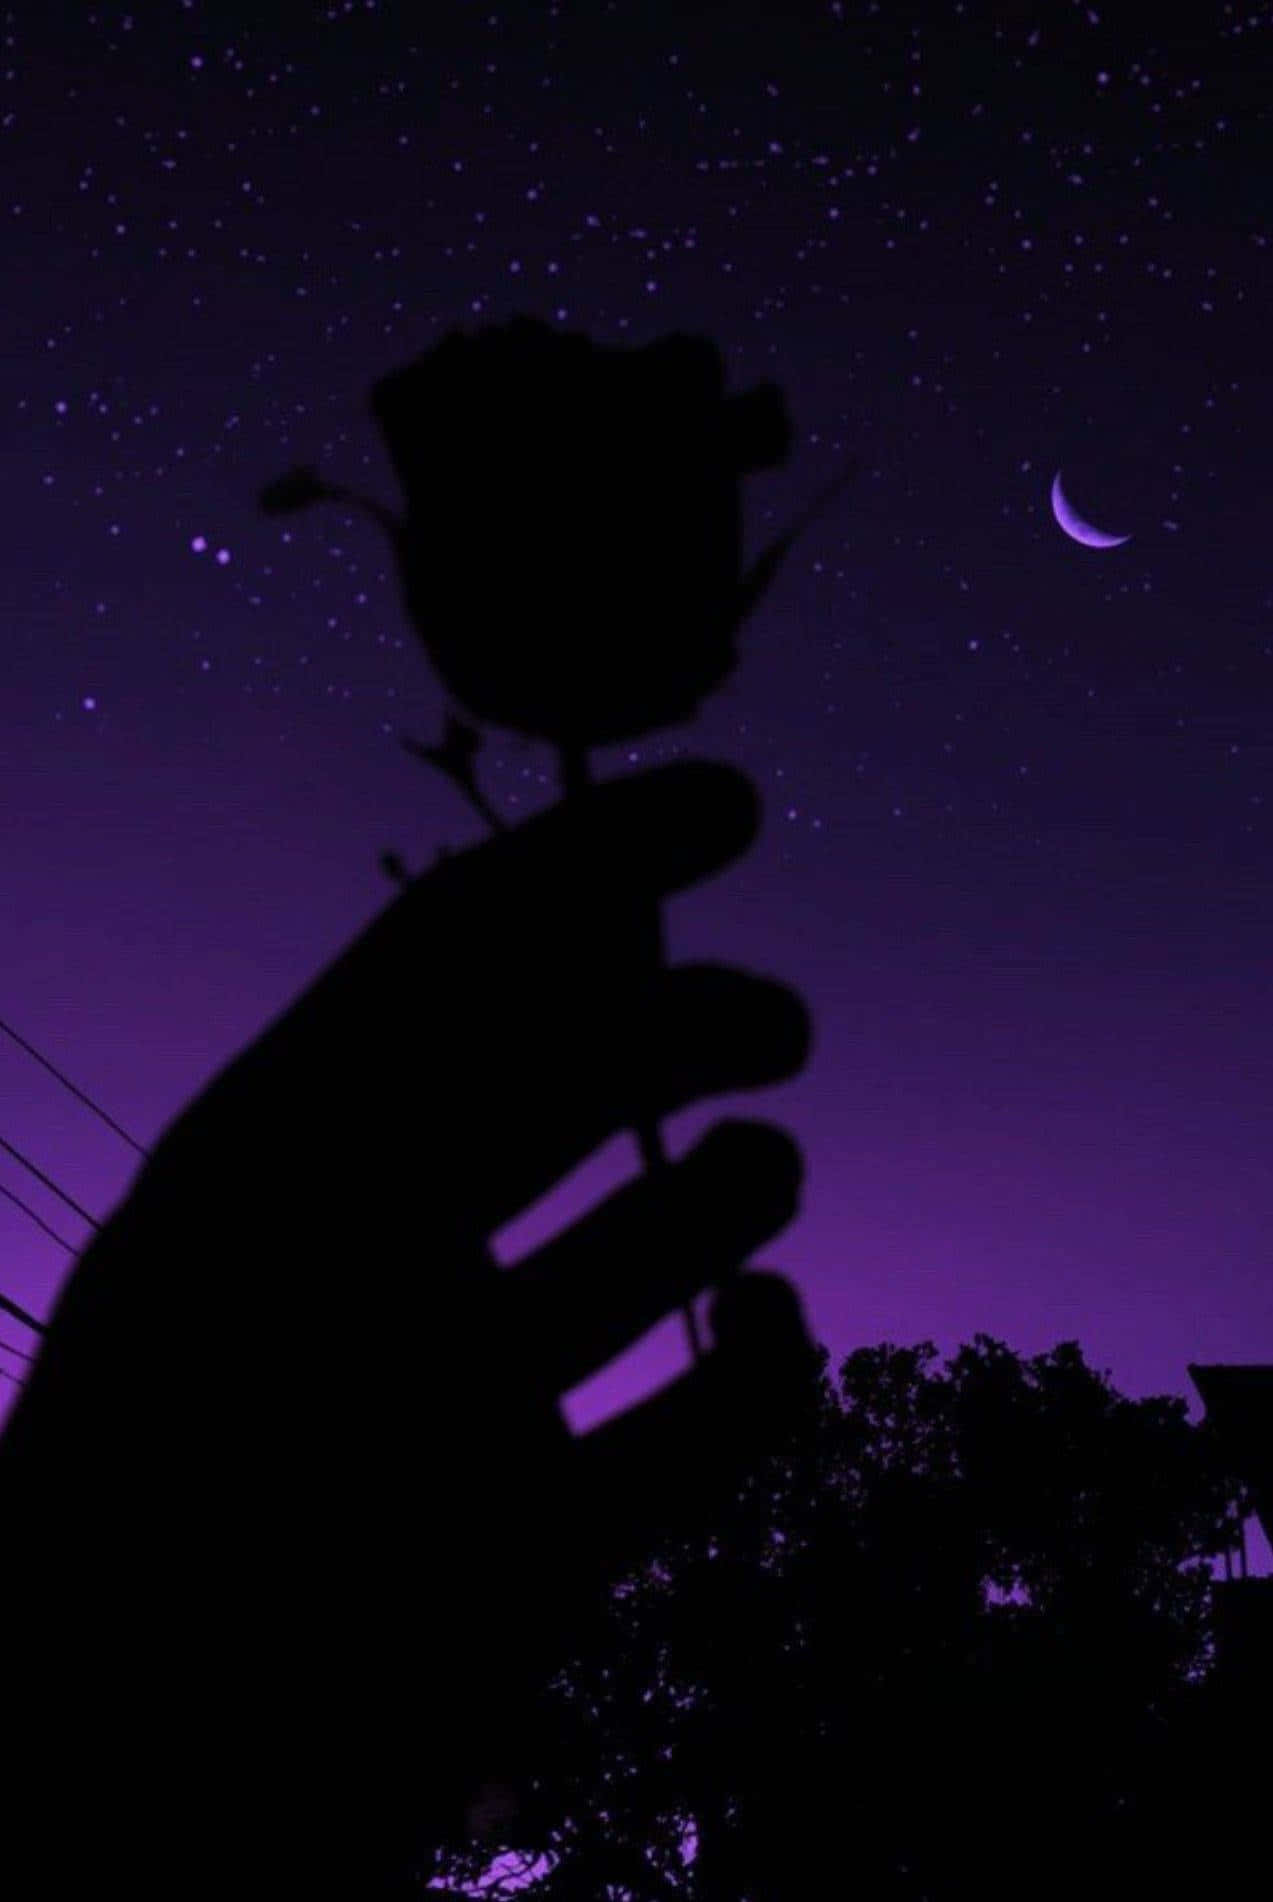 Pretty Purple Silhouette Of A Rose